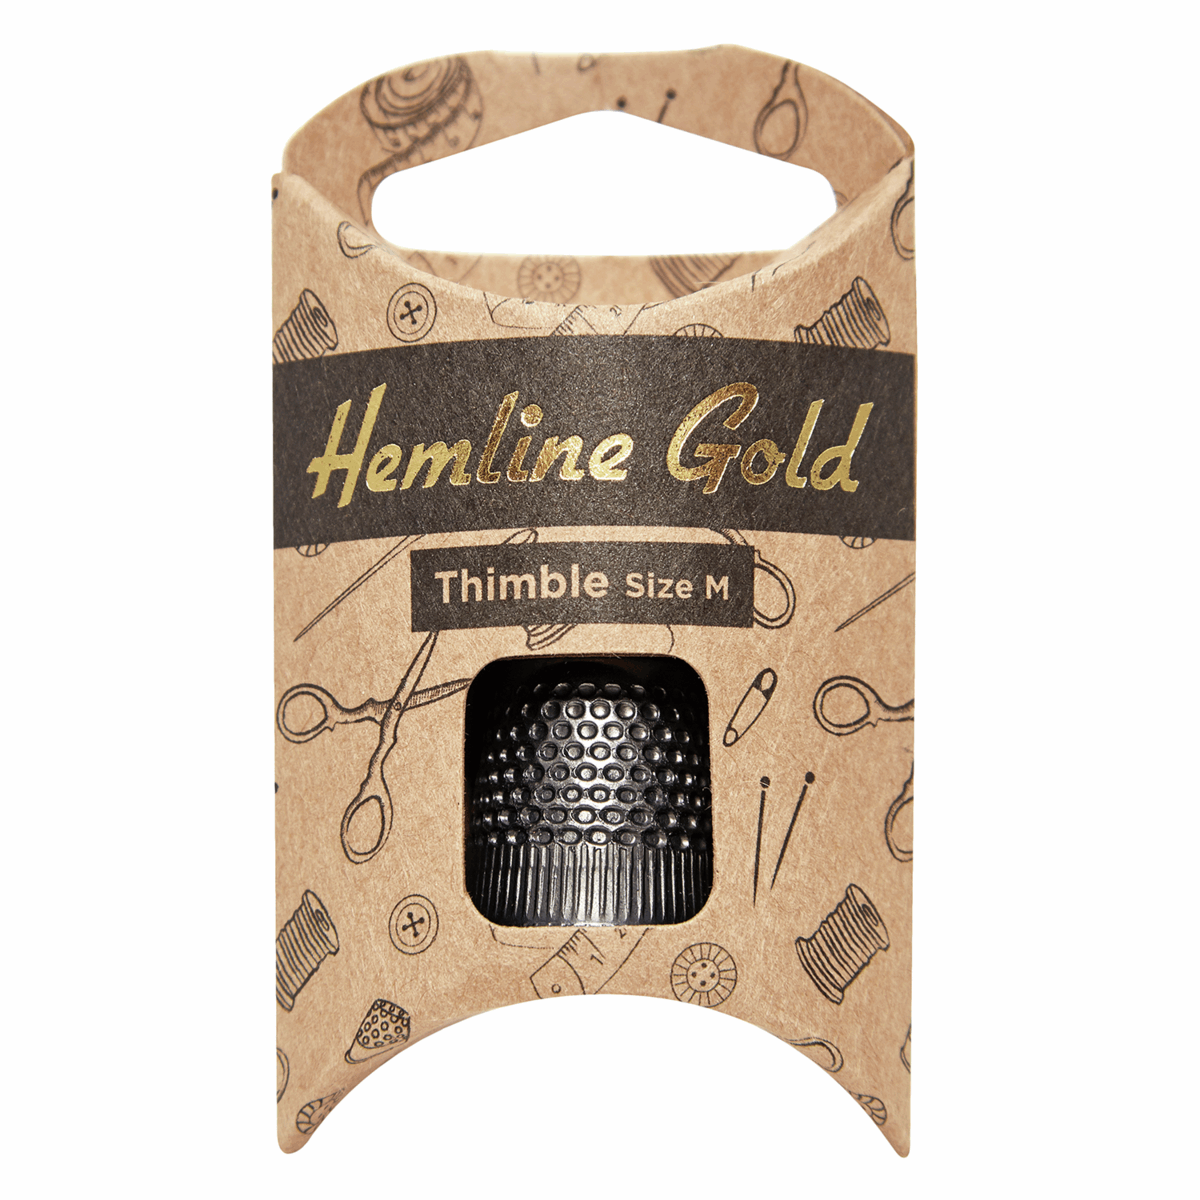 Premium Black Thimble - Medium *Hemline Gold Edition*